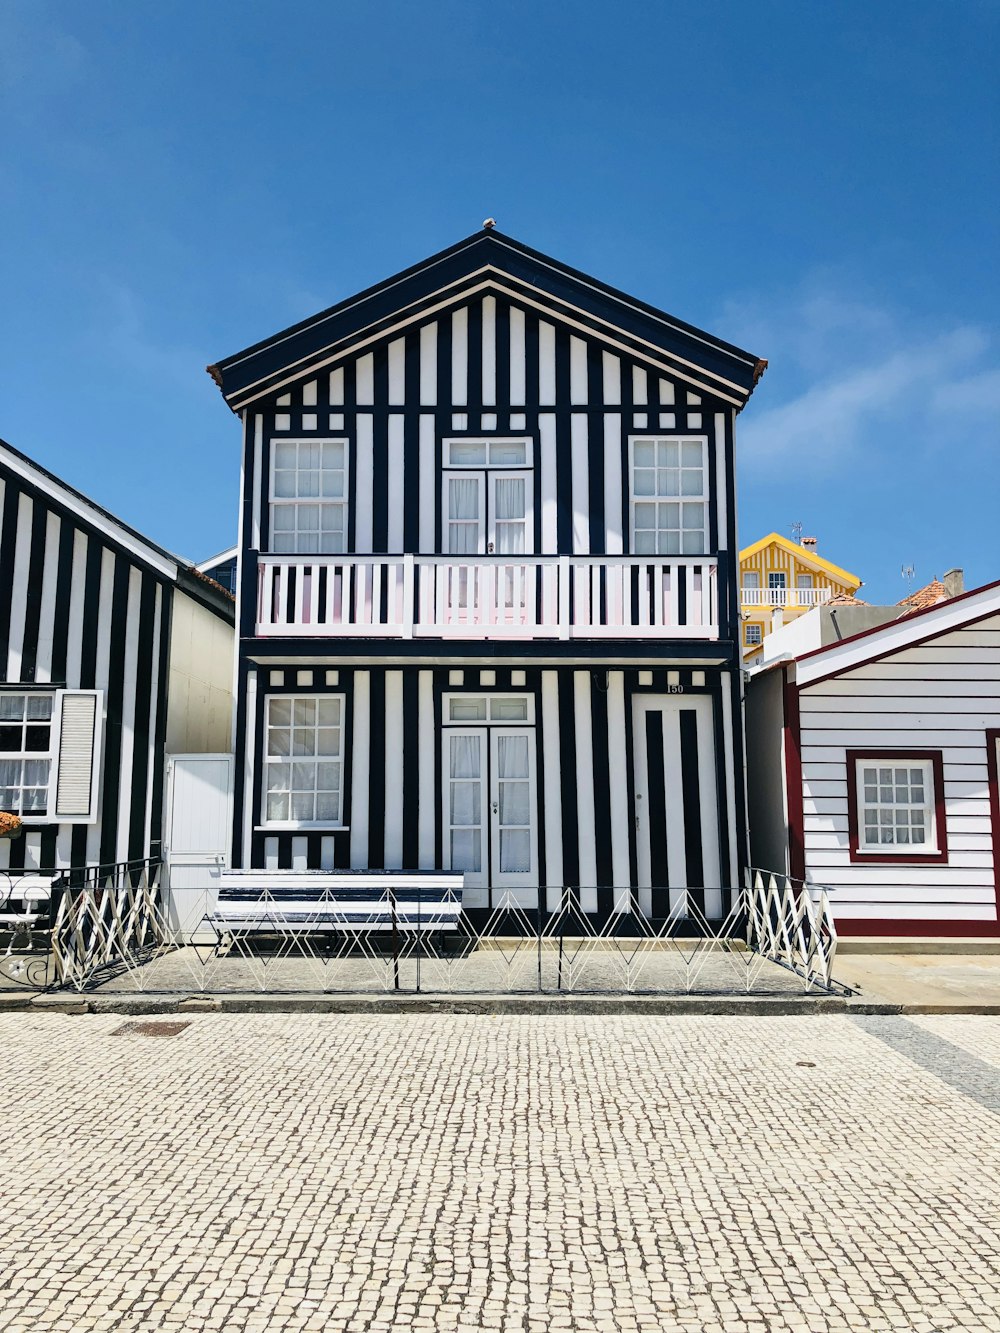 Casa de madera en blanco y negro